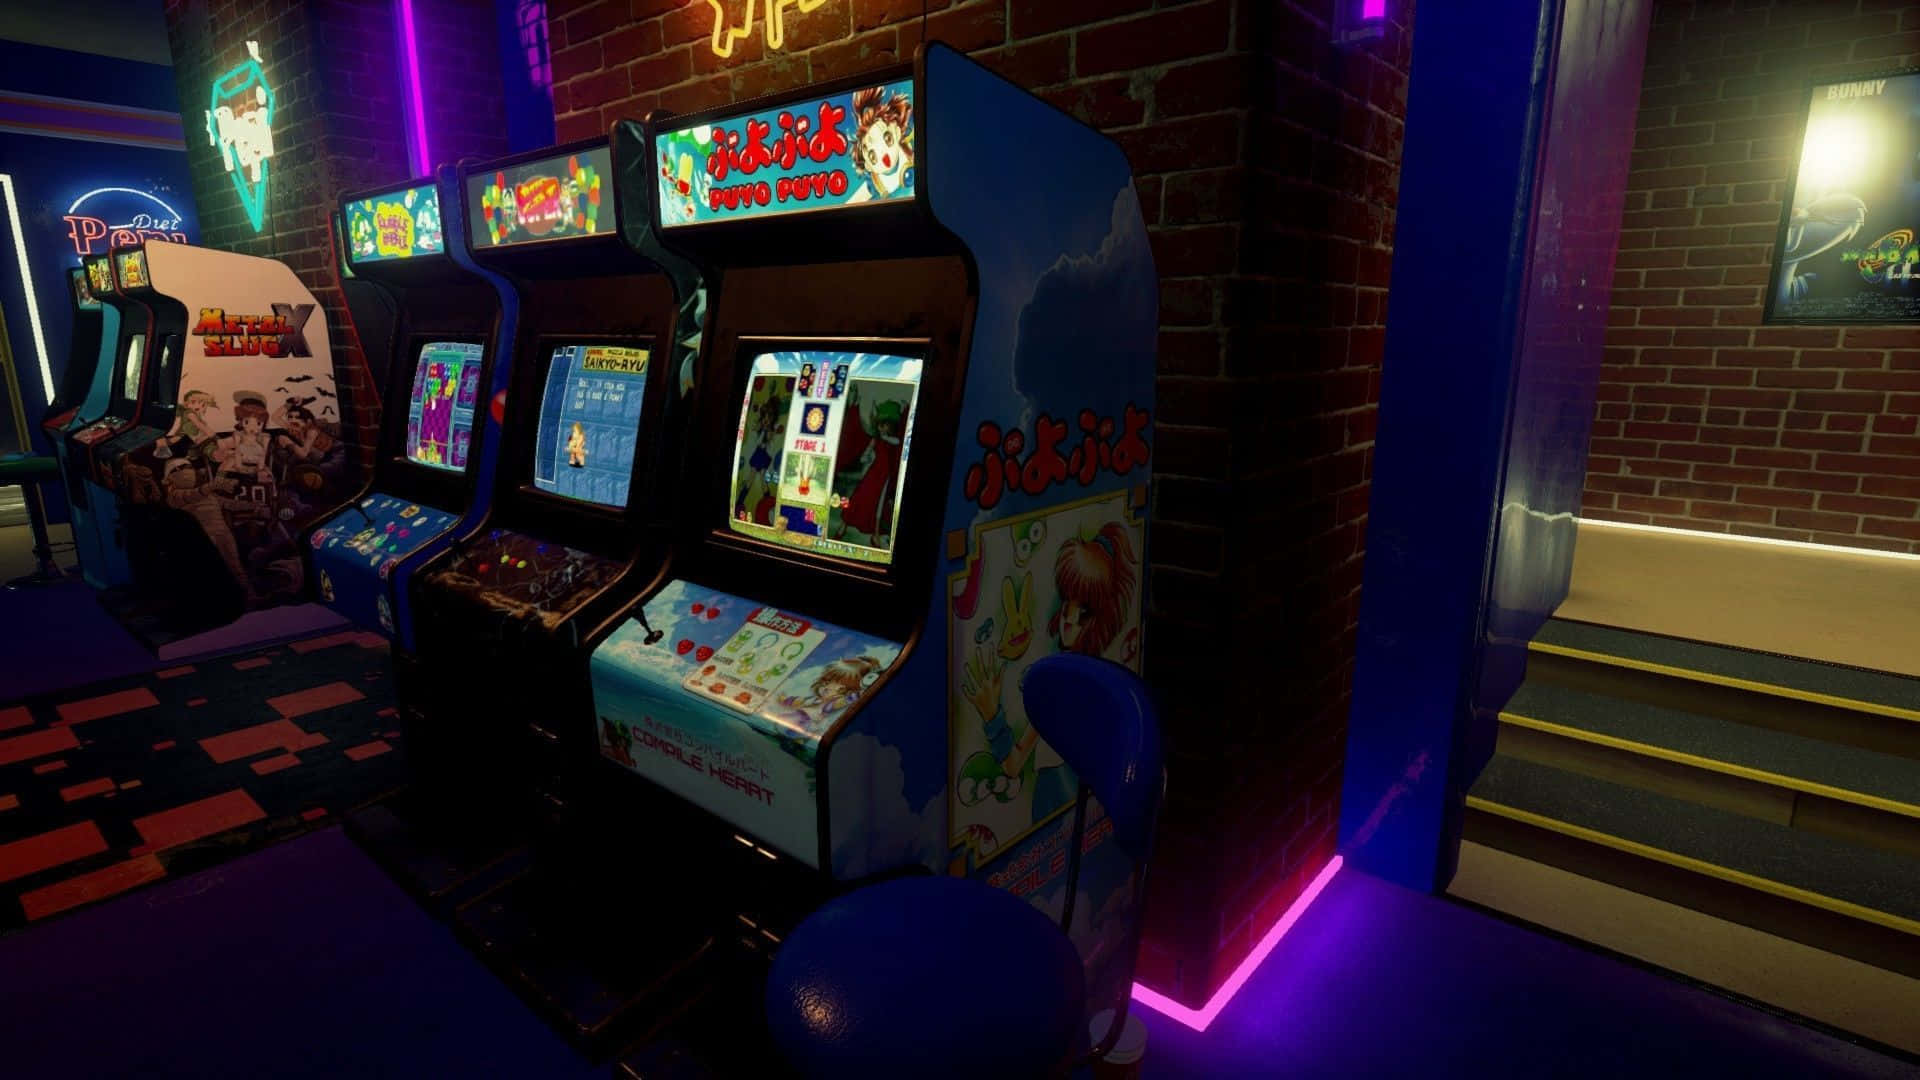 Lucesbrillantes De Neón Y Colores Vibrantes Del Estético Clásico De Los Arcades. Fondo de pantalla